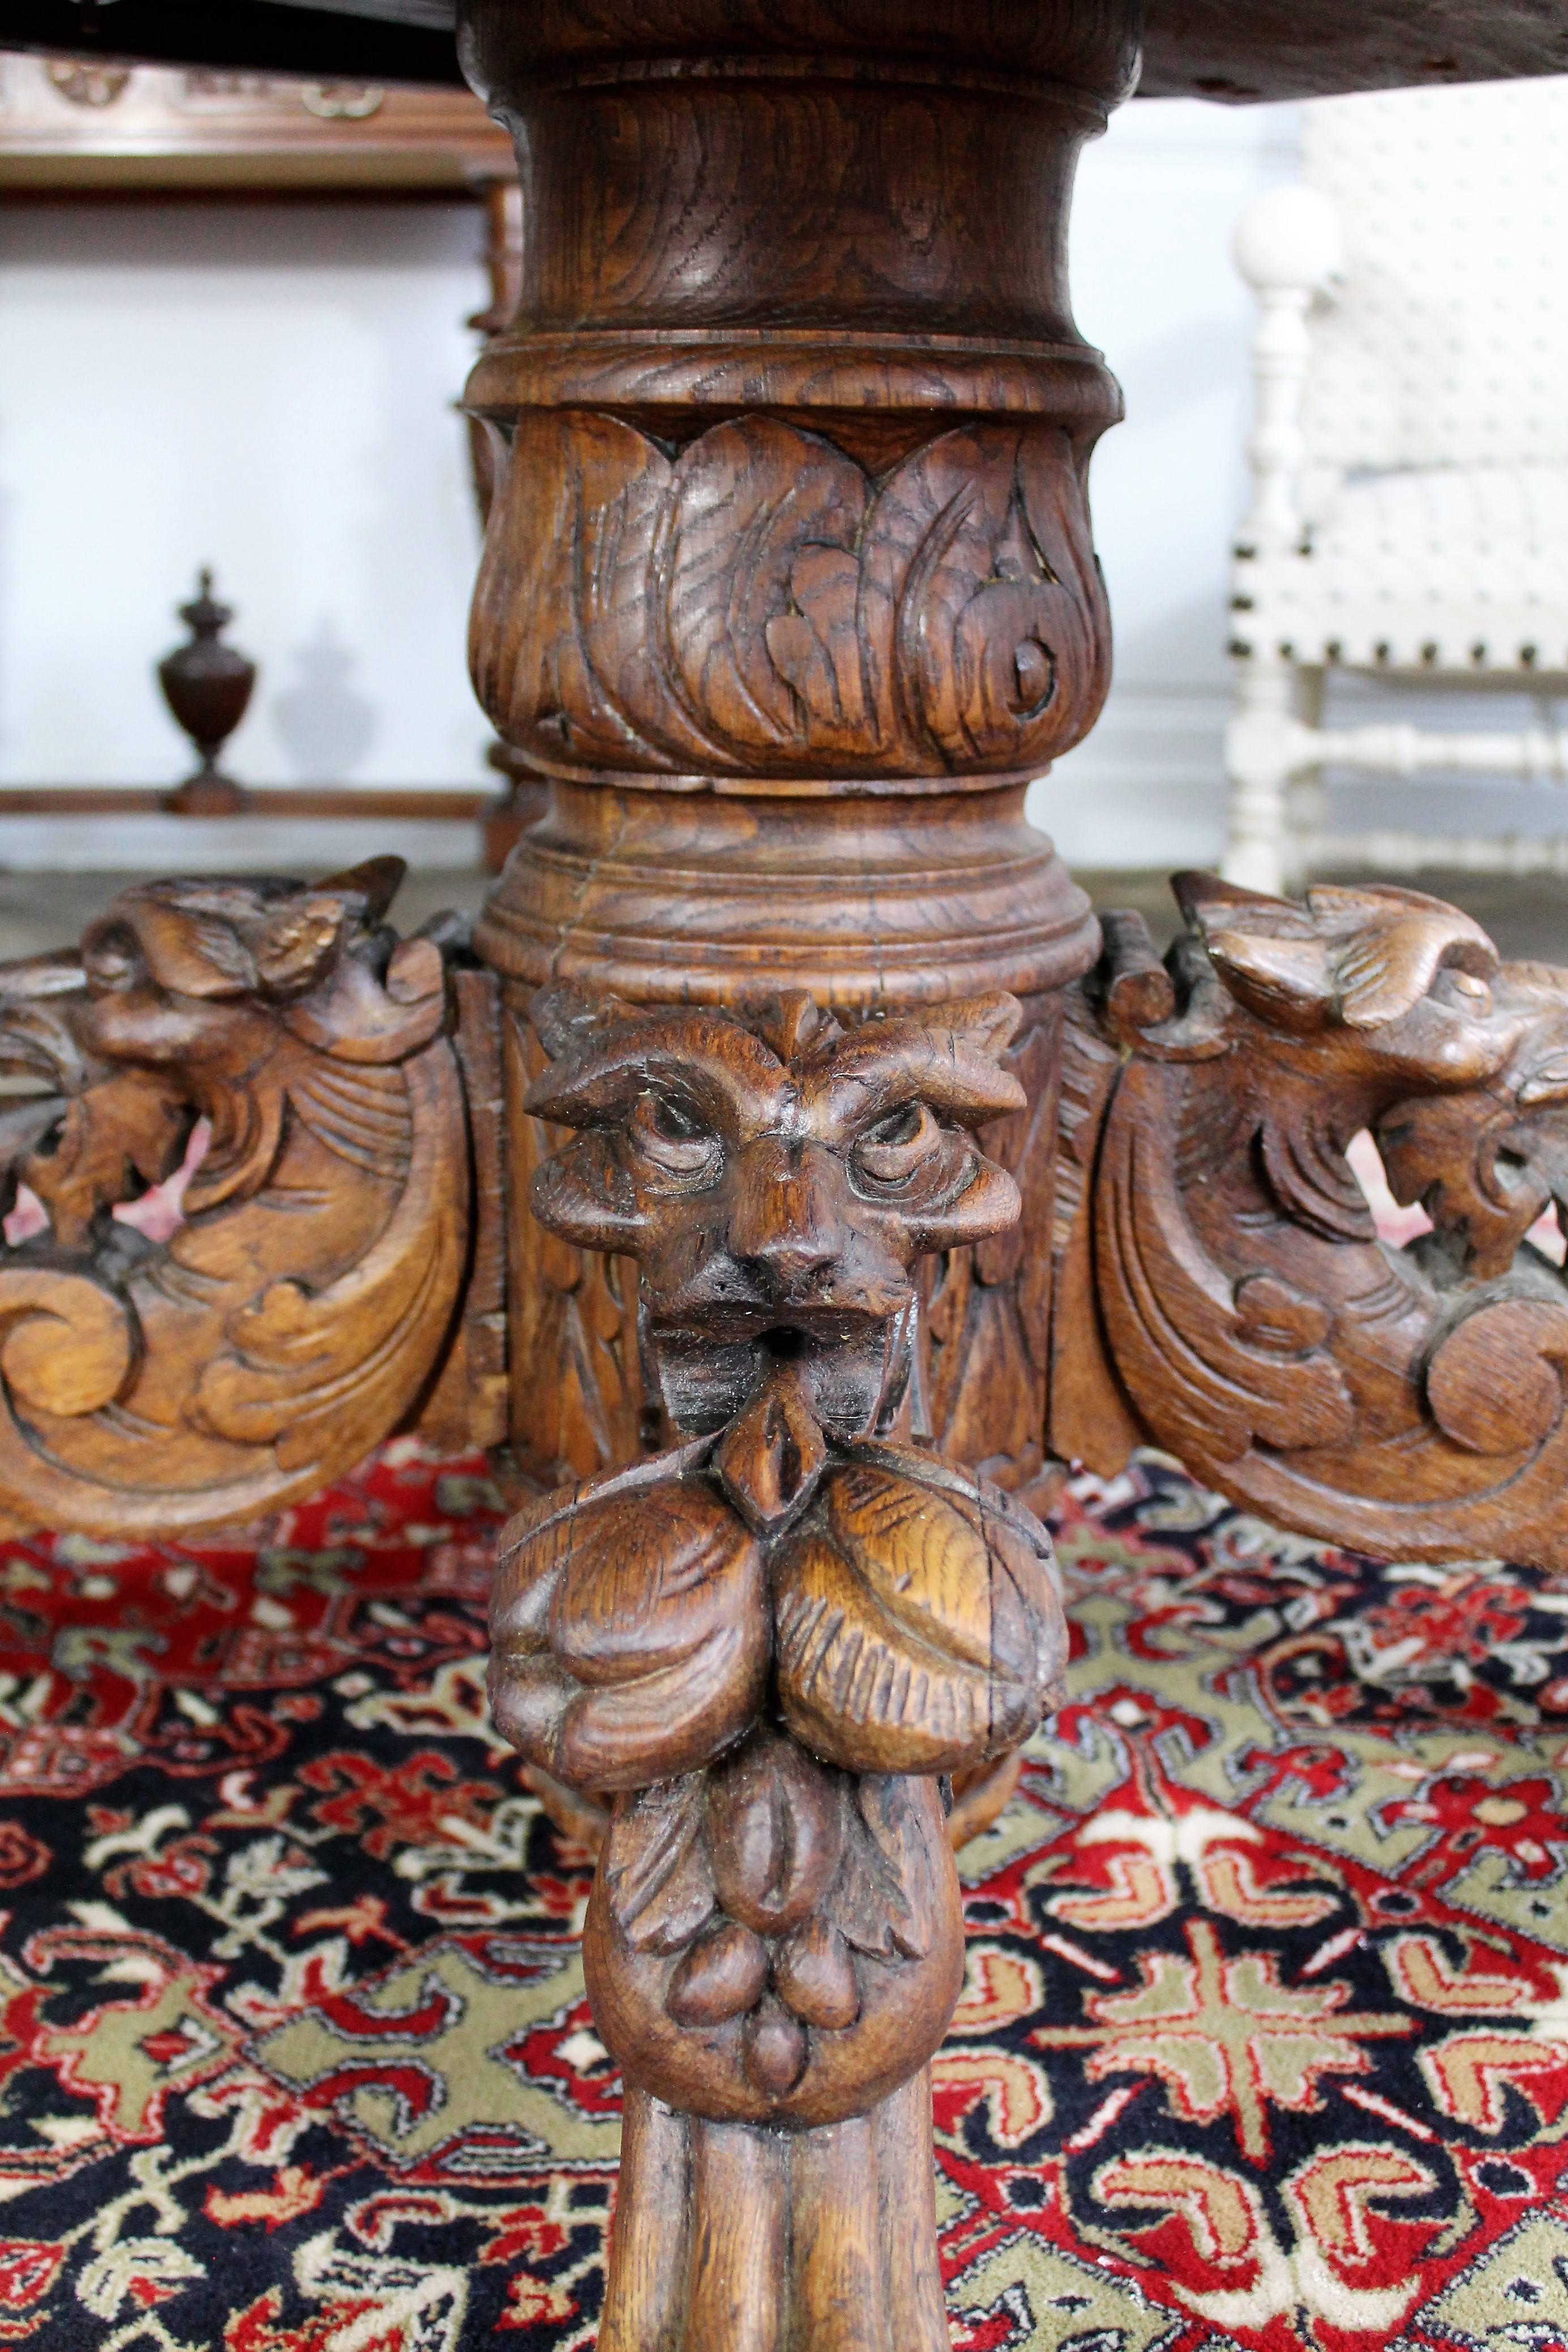 Oak Renaissance Revival Table with Lion's Head